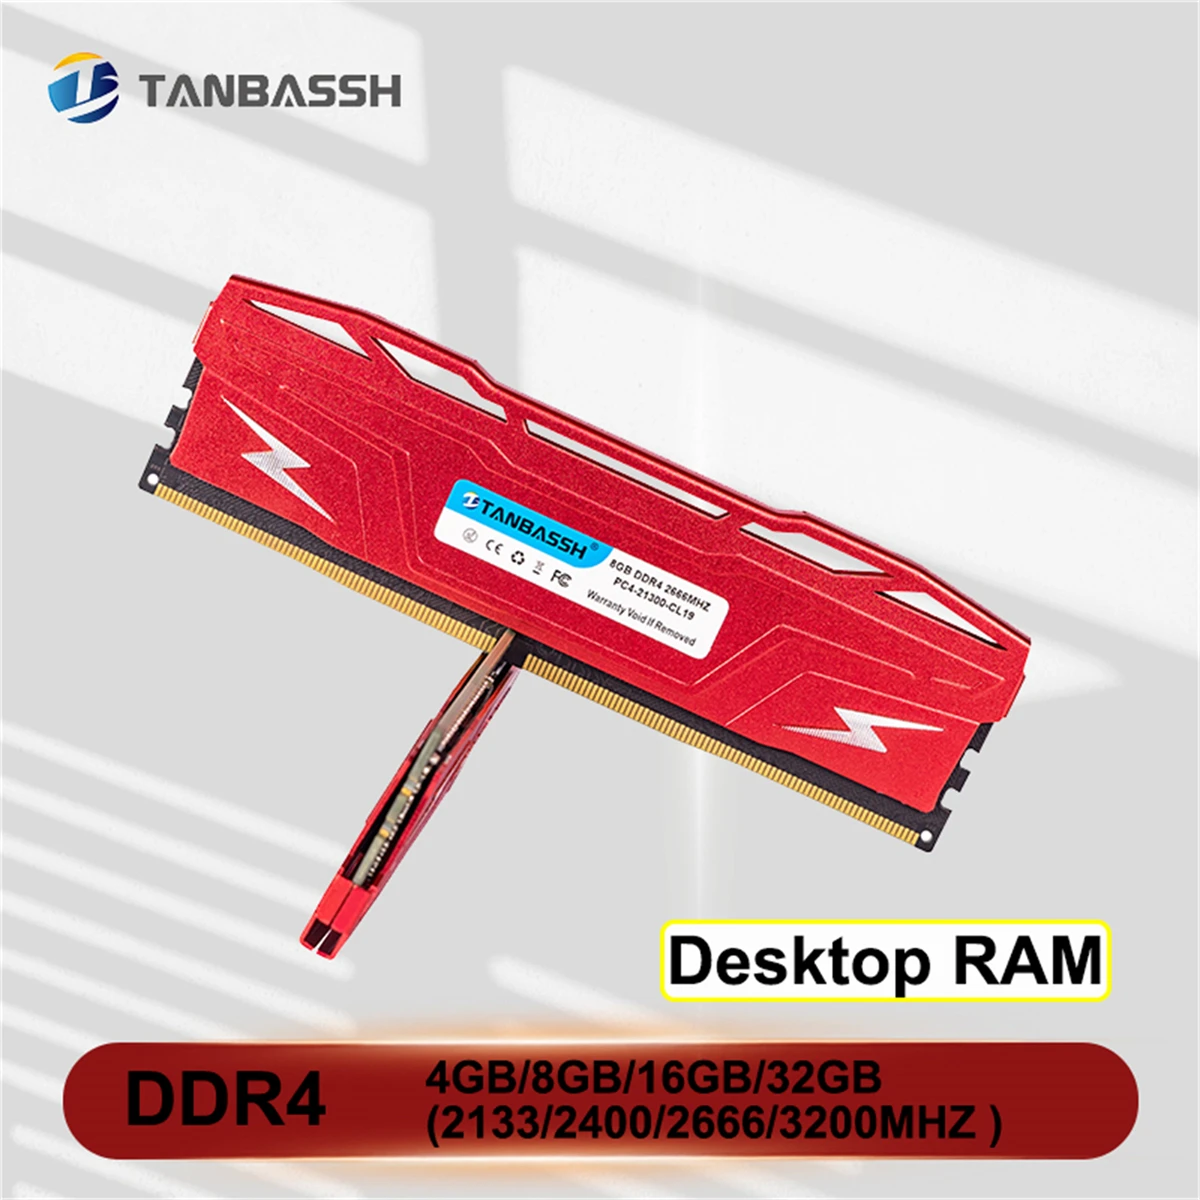 

Красная настольная память TANBASSH с радиатором DDR4 RAM 4 ГБ 8 ГБ 16 ГБ 2133 2400 2666 3200 МГц ПК DIMM Ram s для Intel AMD всех материнских плат